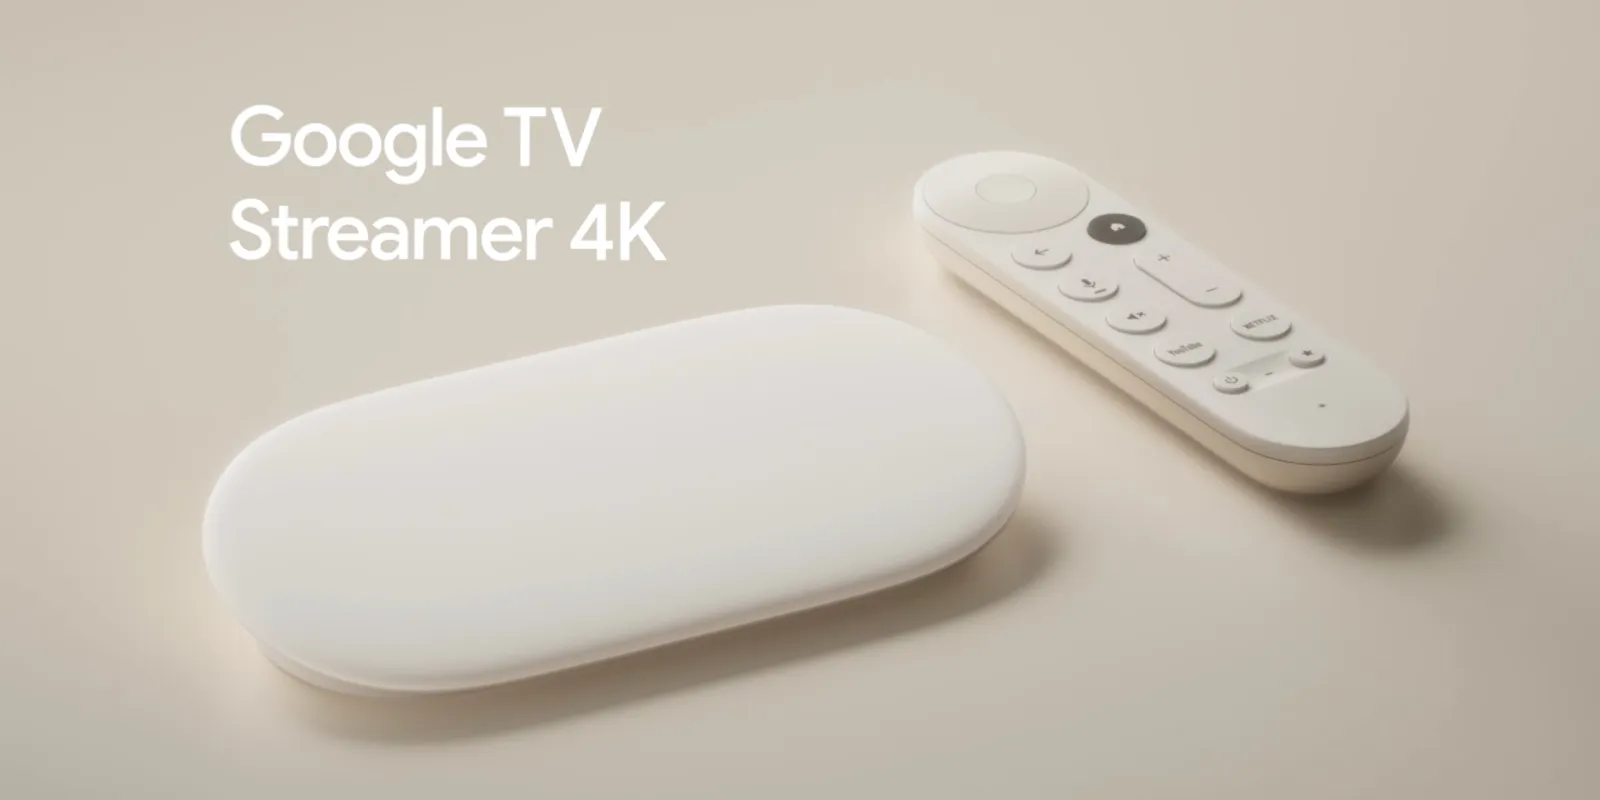 Google prezentuje nowy Google TV Streamer: bardziej wydajny, ze zaktualizowanym wyglądem i funkcjami inteligentnego domu